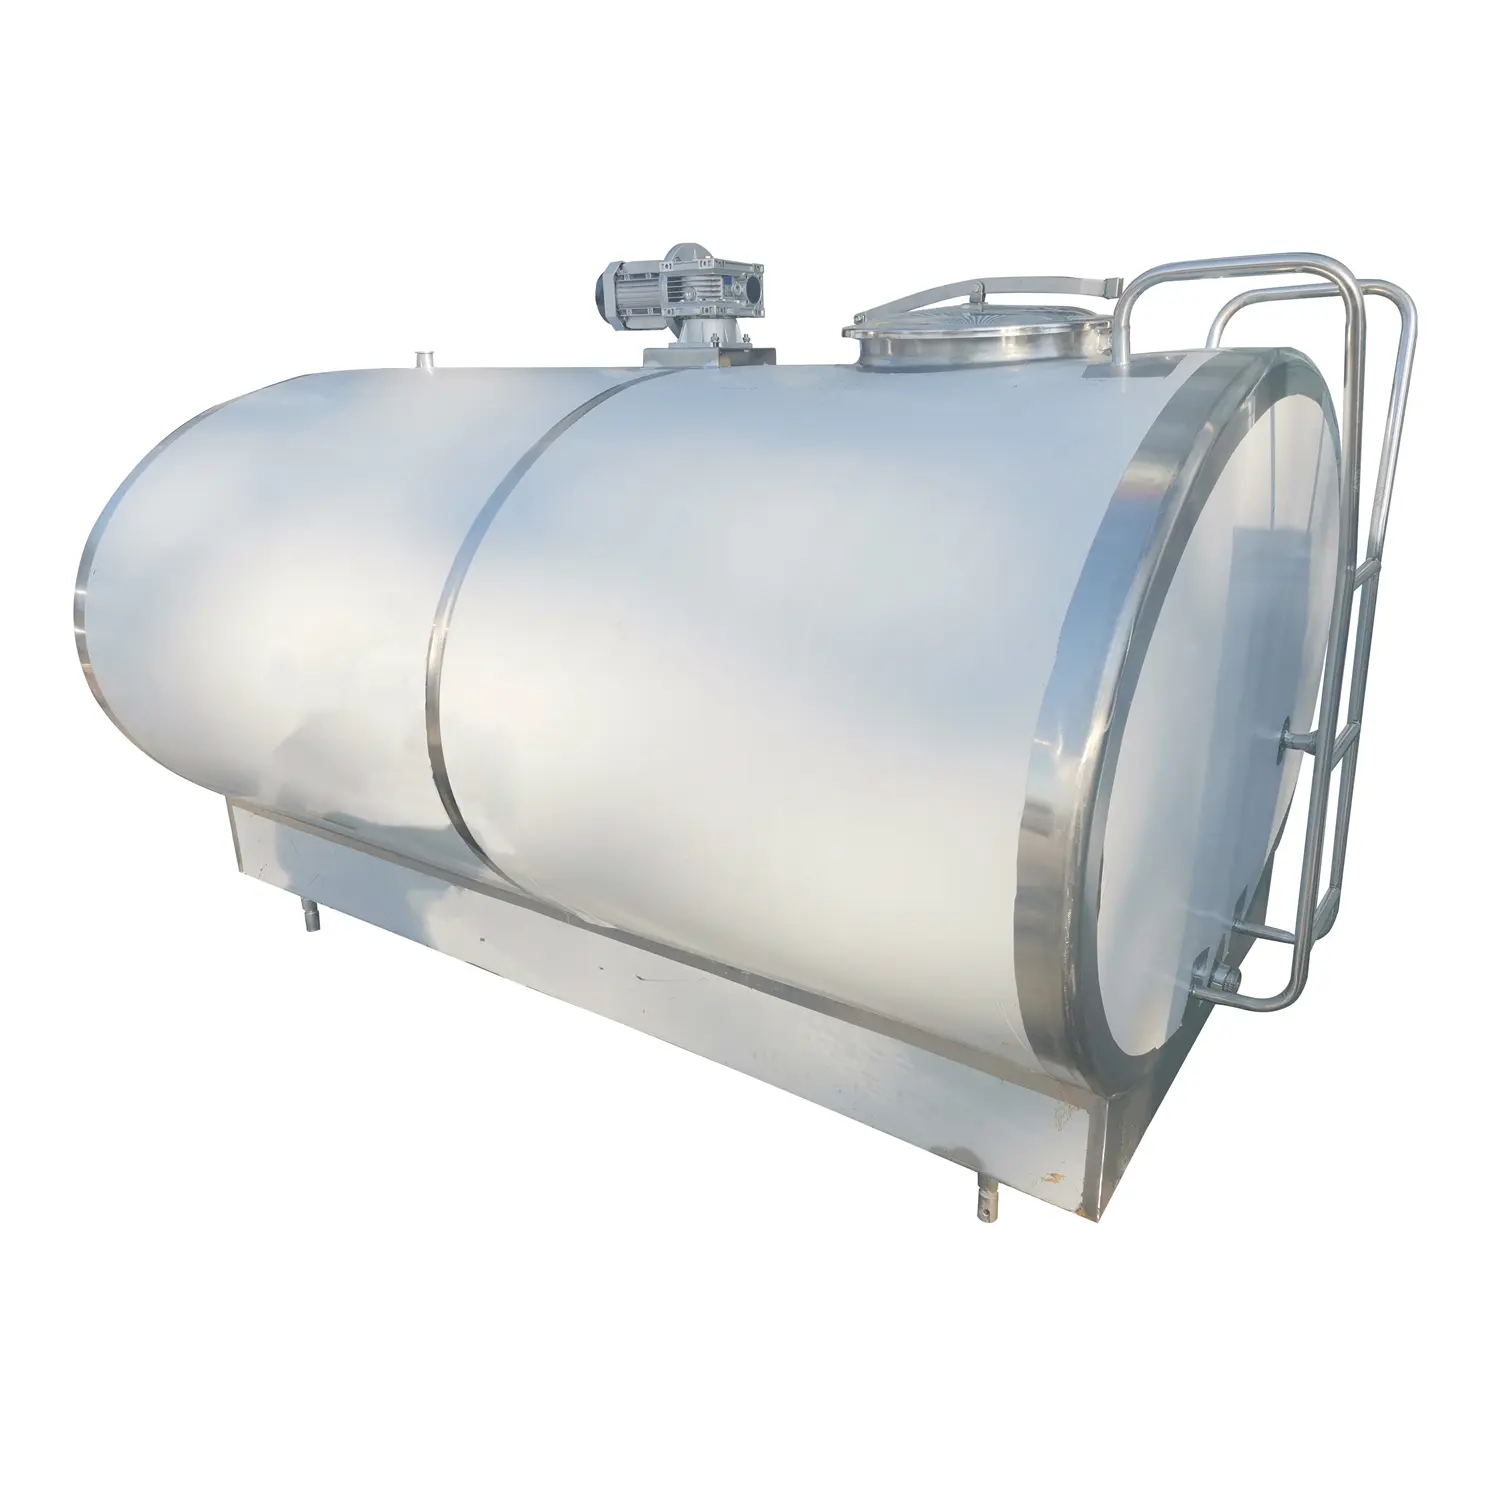 Süt çiftliği için suyu süt soğutma tankı depolama tankı için 1500 litre gıda sınıfı paslanmaz çelik 304 316 Cooling soğutma aseptik tankı